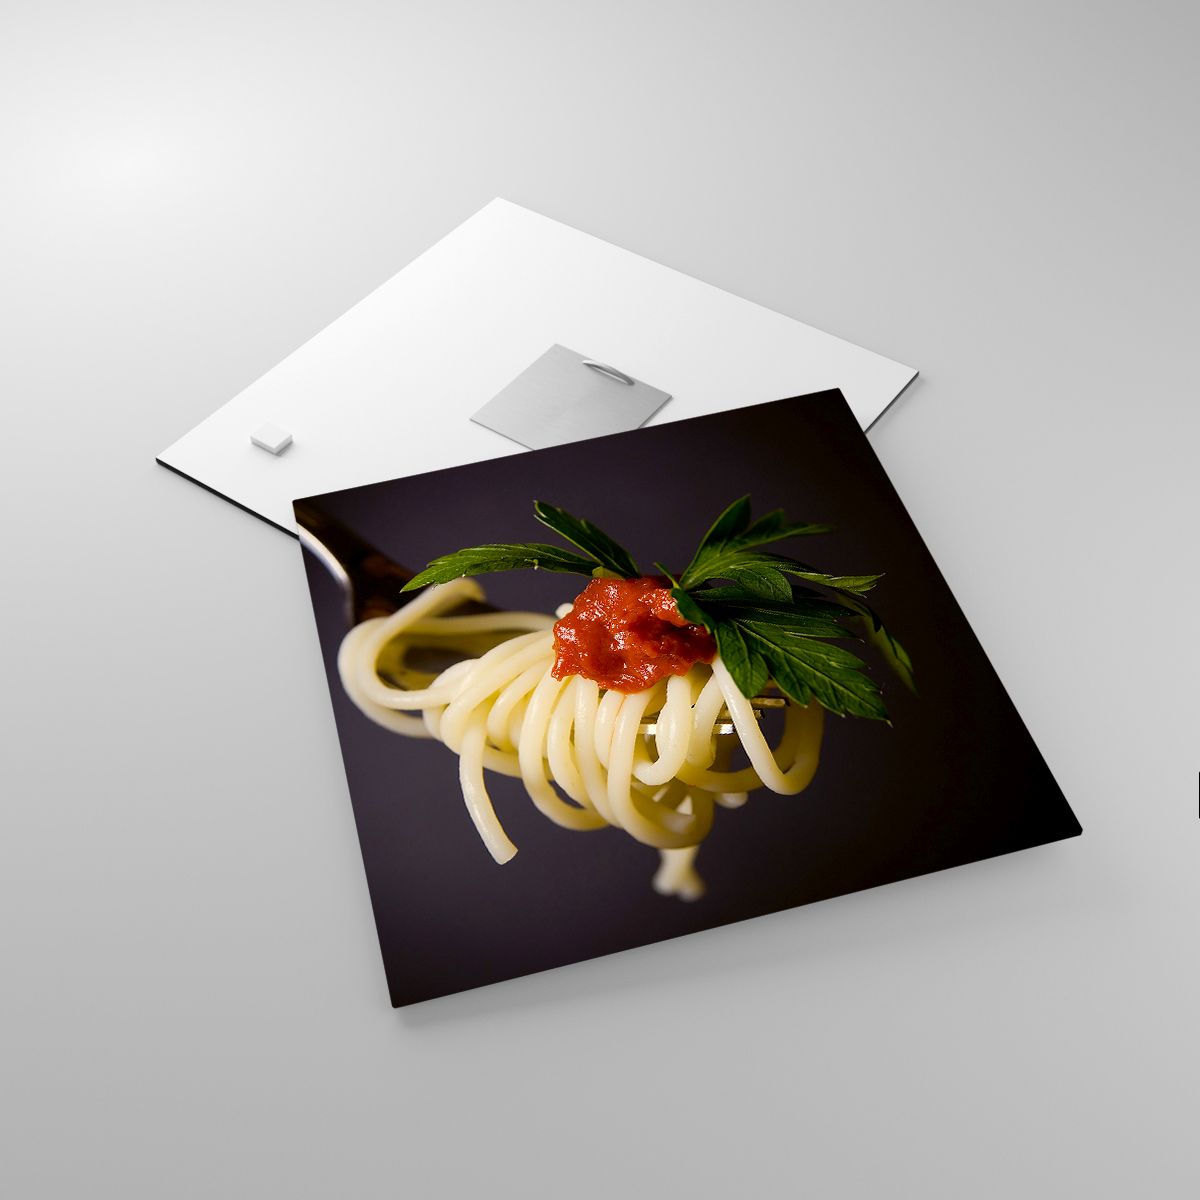 Impression La Gastronomie, Impression Spaghetti, Impression Italie, Impression Pâtes, Impression Culinaire